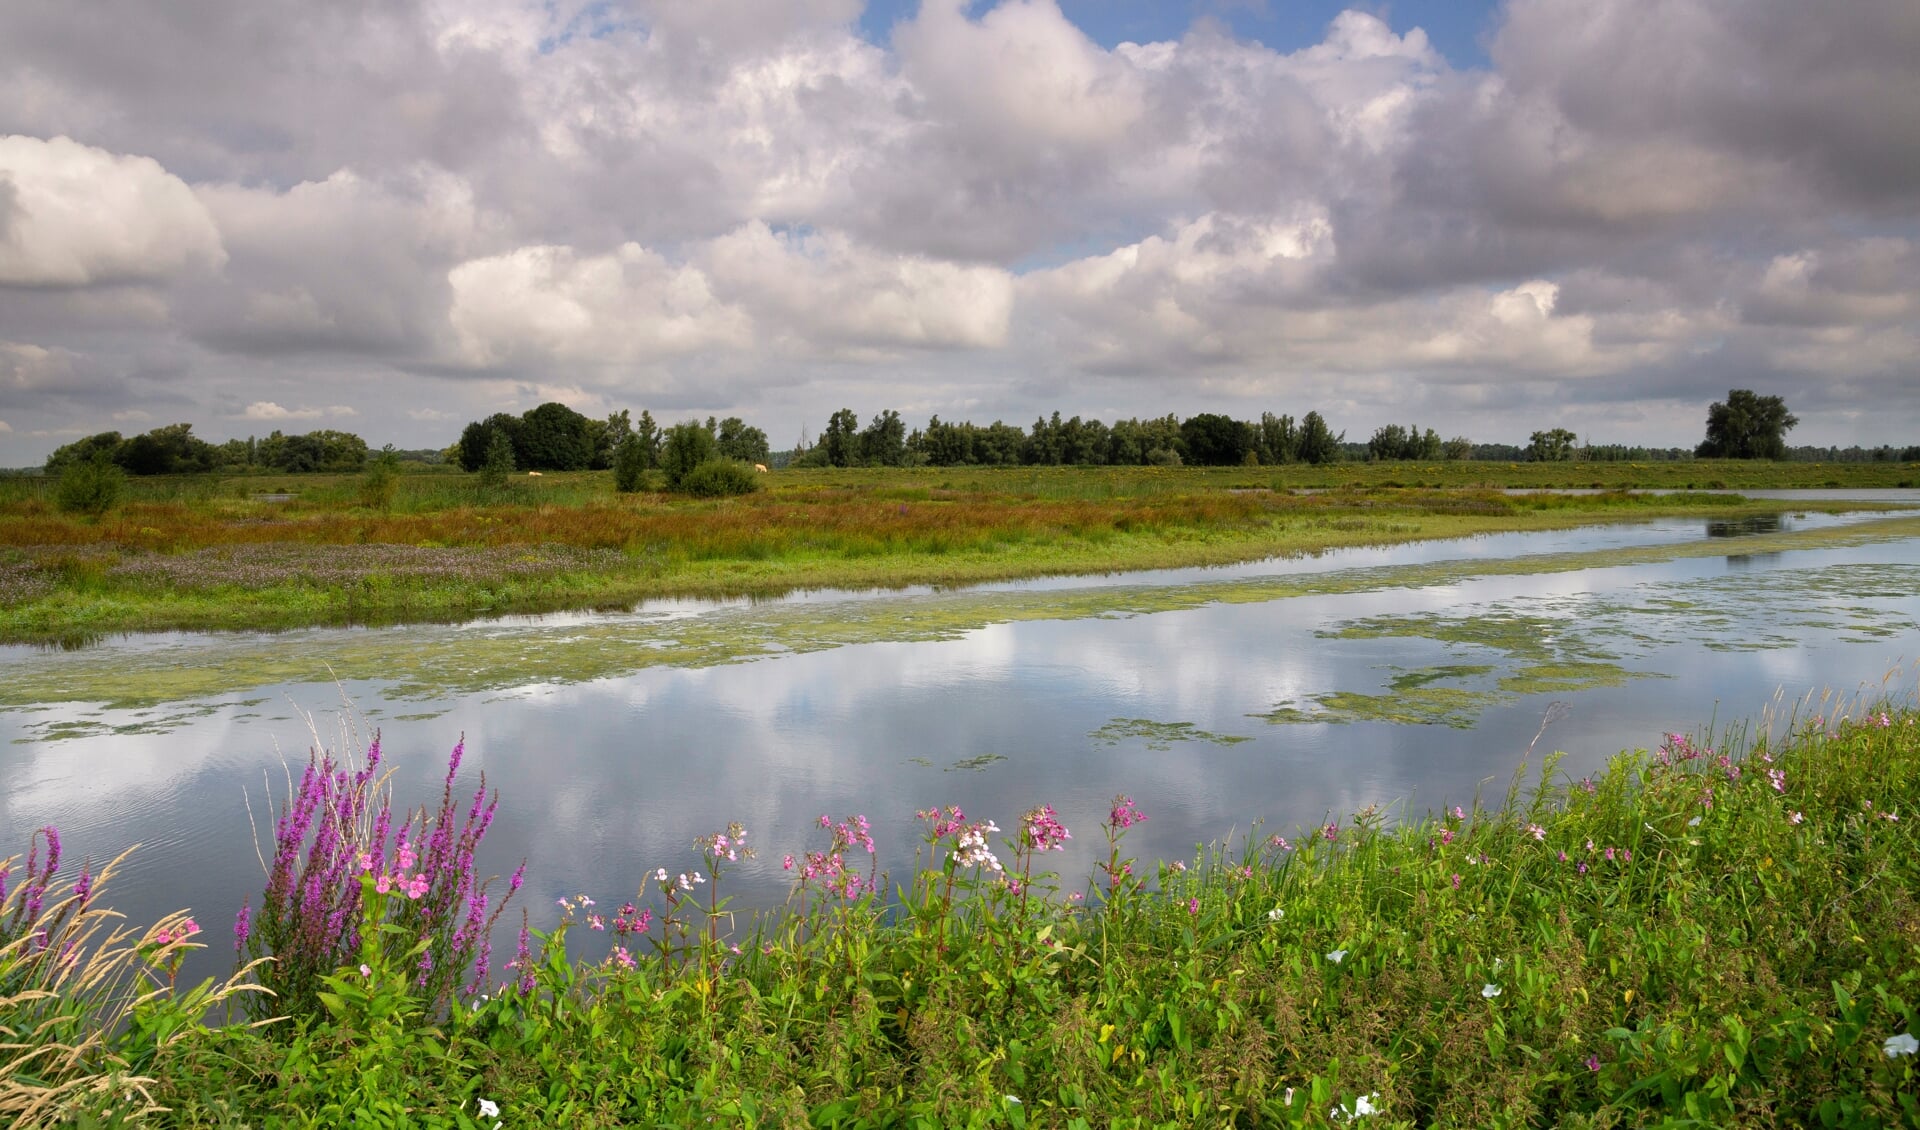 • Afbeelding van landschap in de Biesbosch, ter illustratie.